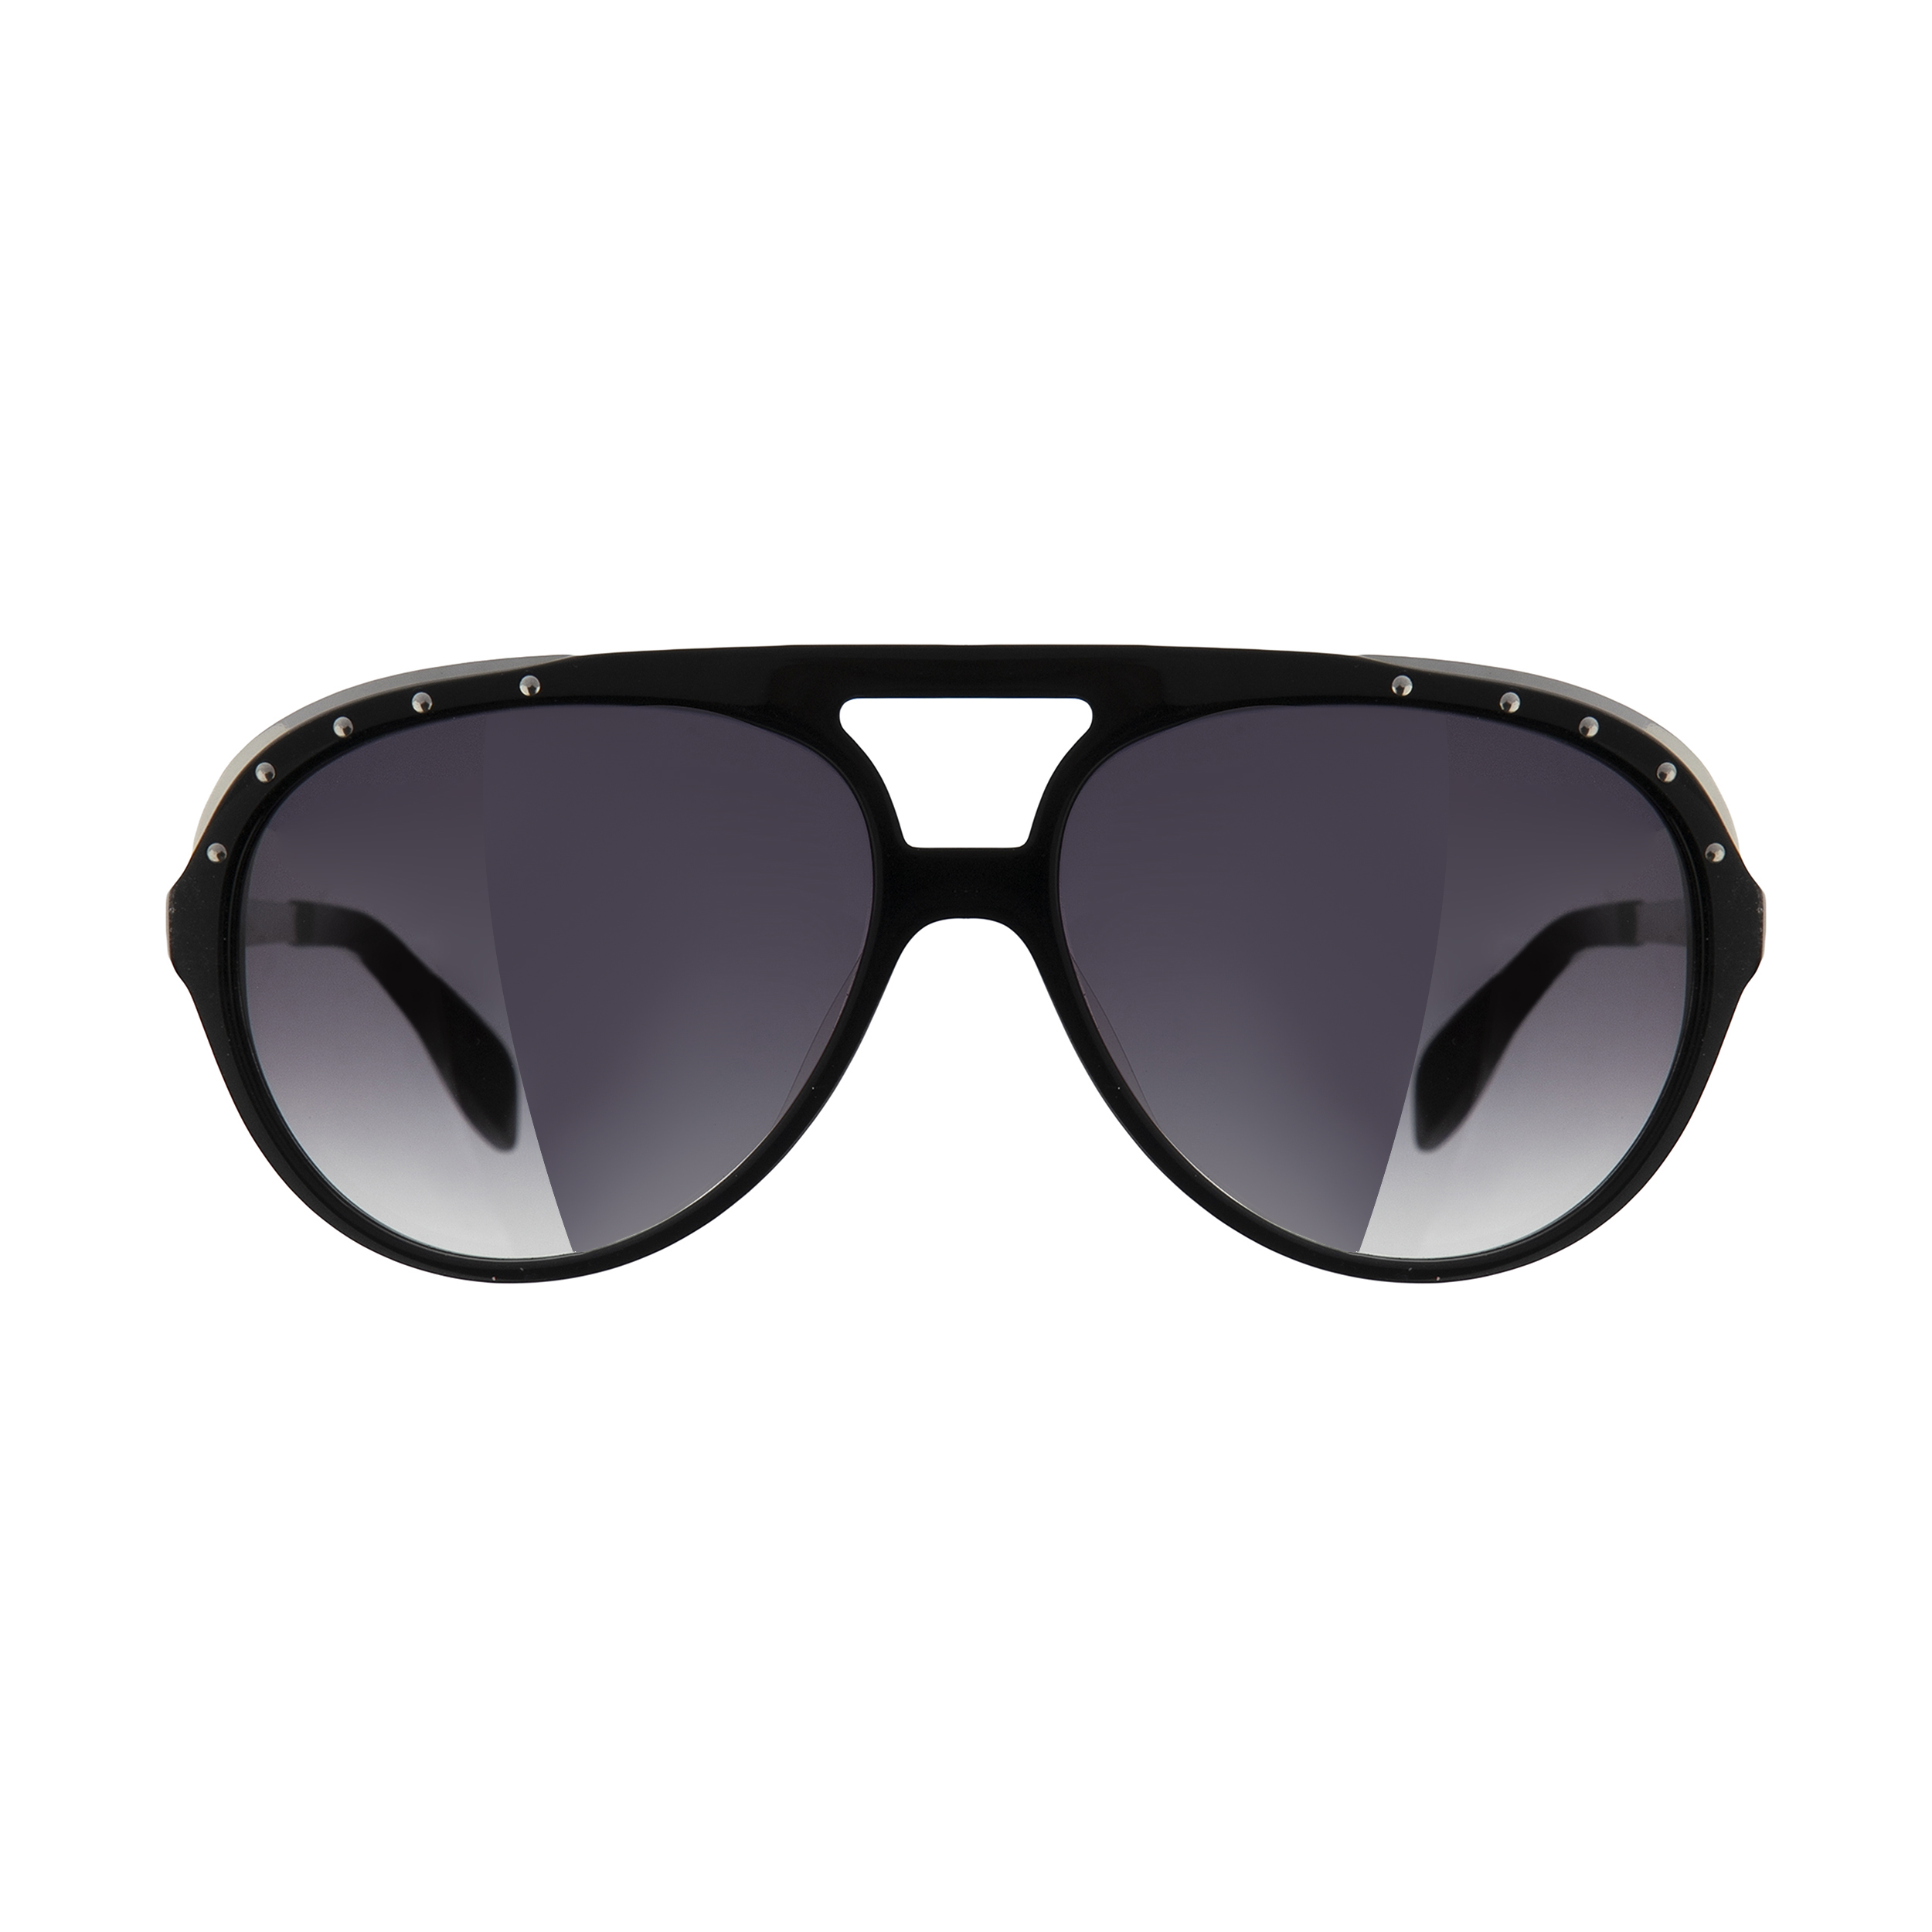 عینک آفتابی الکساندر مک کوئین مدل 4240